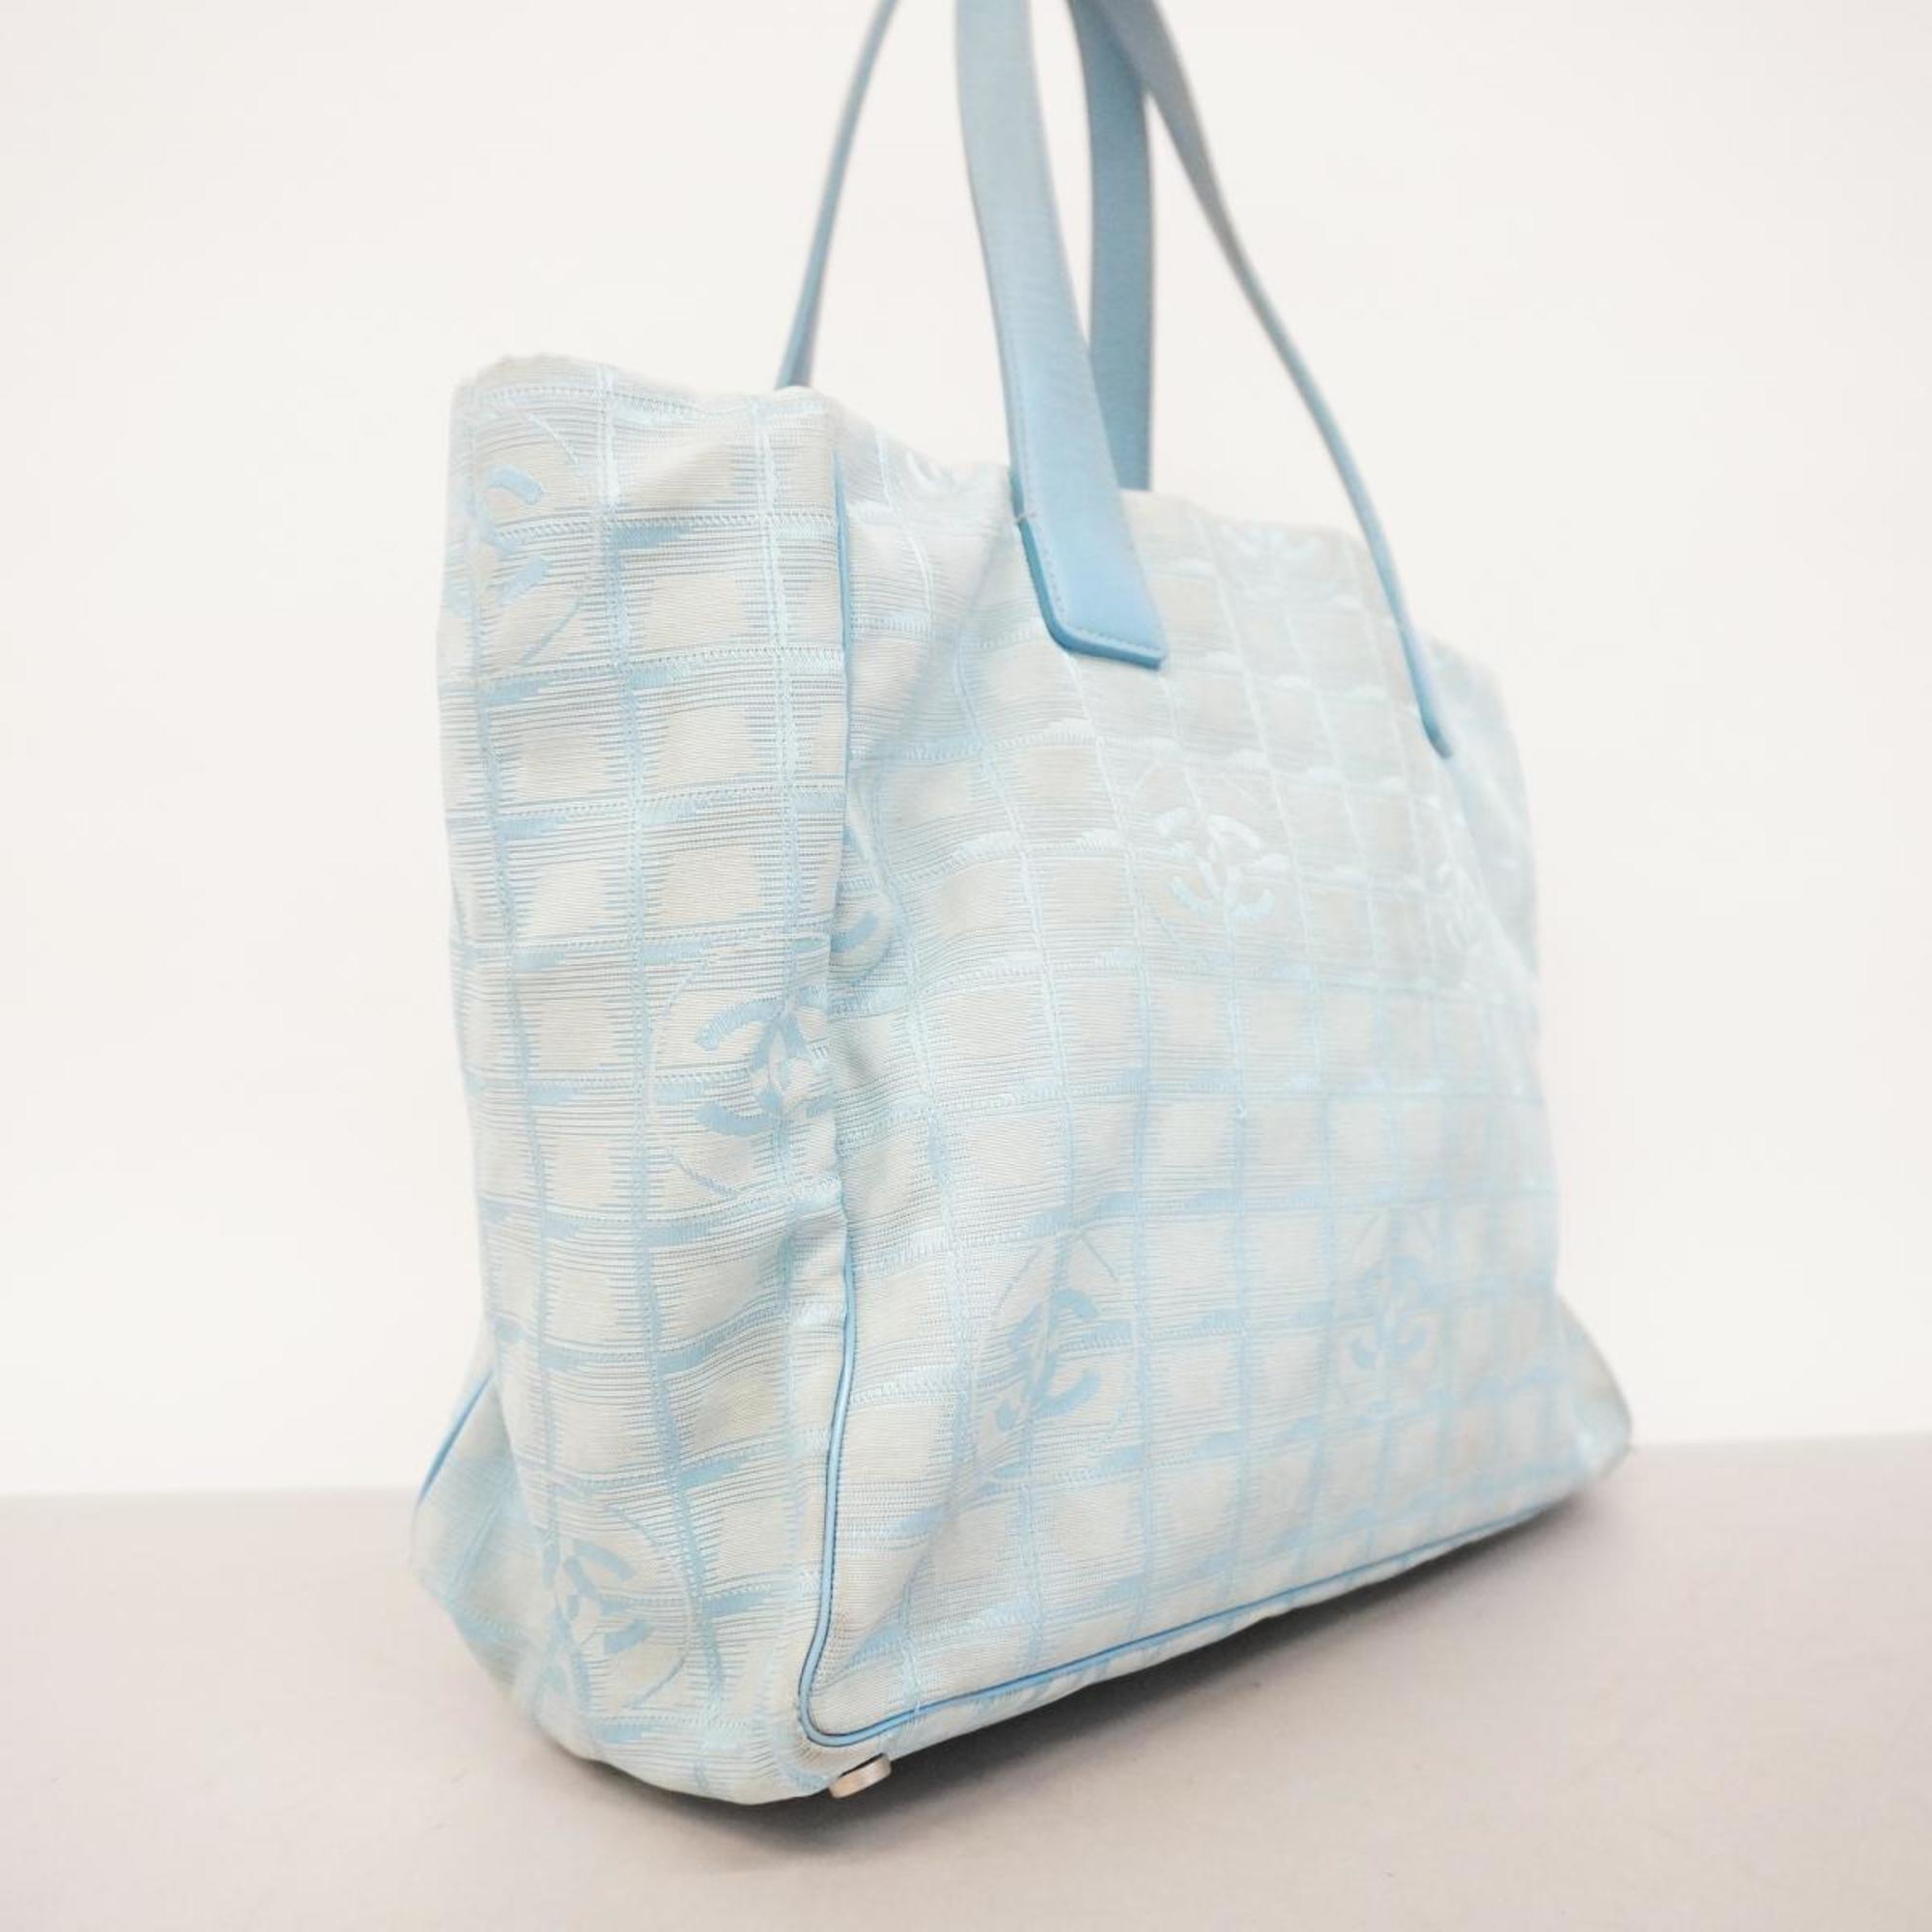 Chanel Tote Bag New Travel Nylon Light Blue Women's